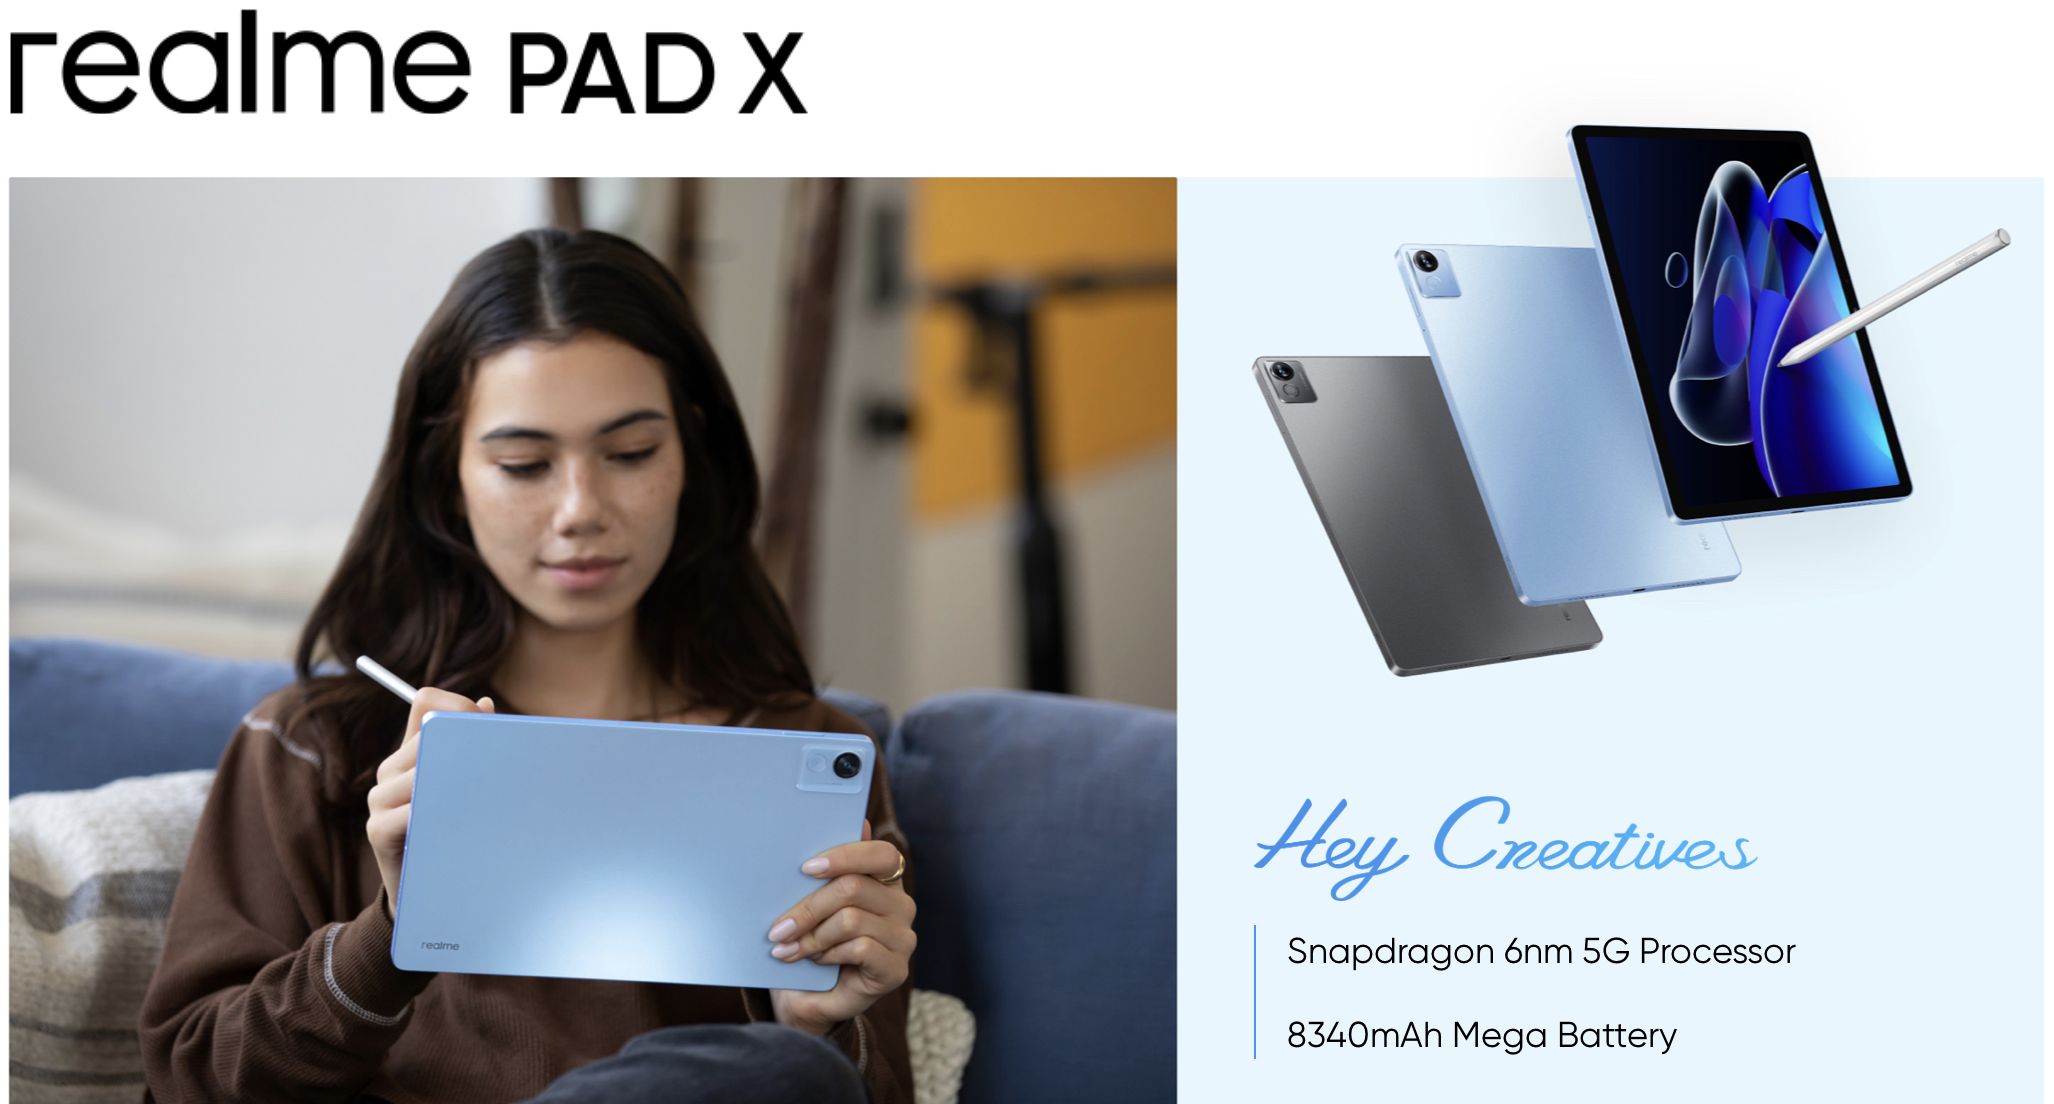 el realme Pad X se lanza fuera de China: tableta con pantalla 2K de 11 pulgadas, 5G y chip Snapdragon 695, con un precio desde 251 dólares